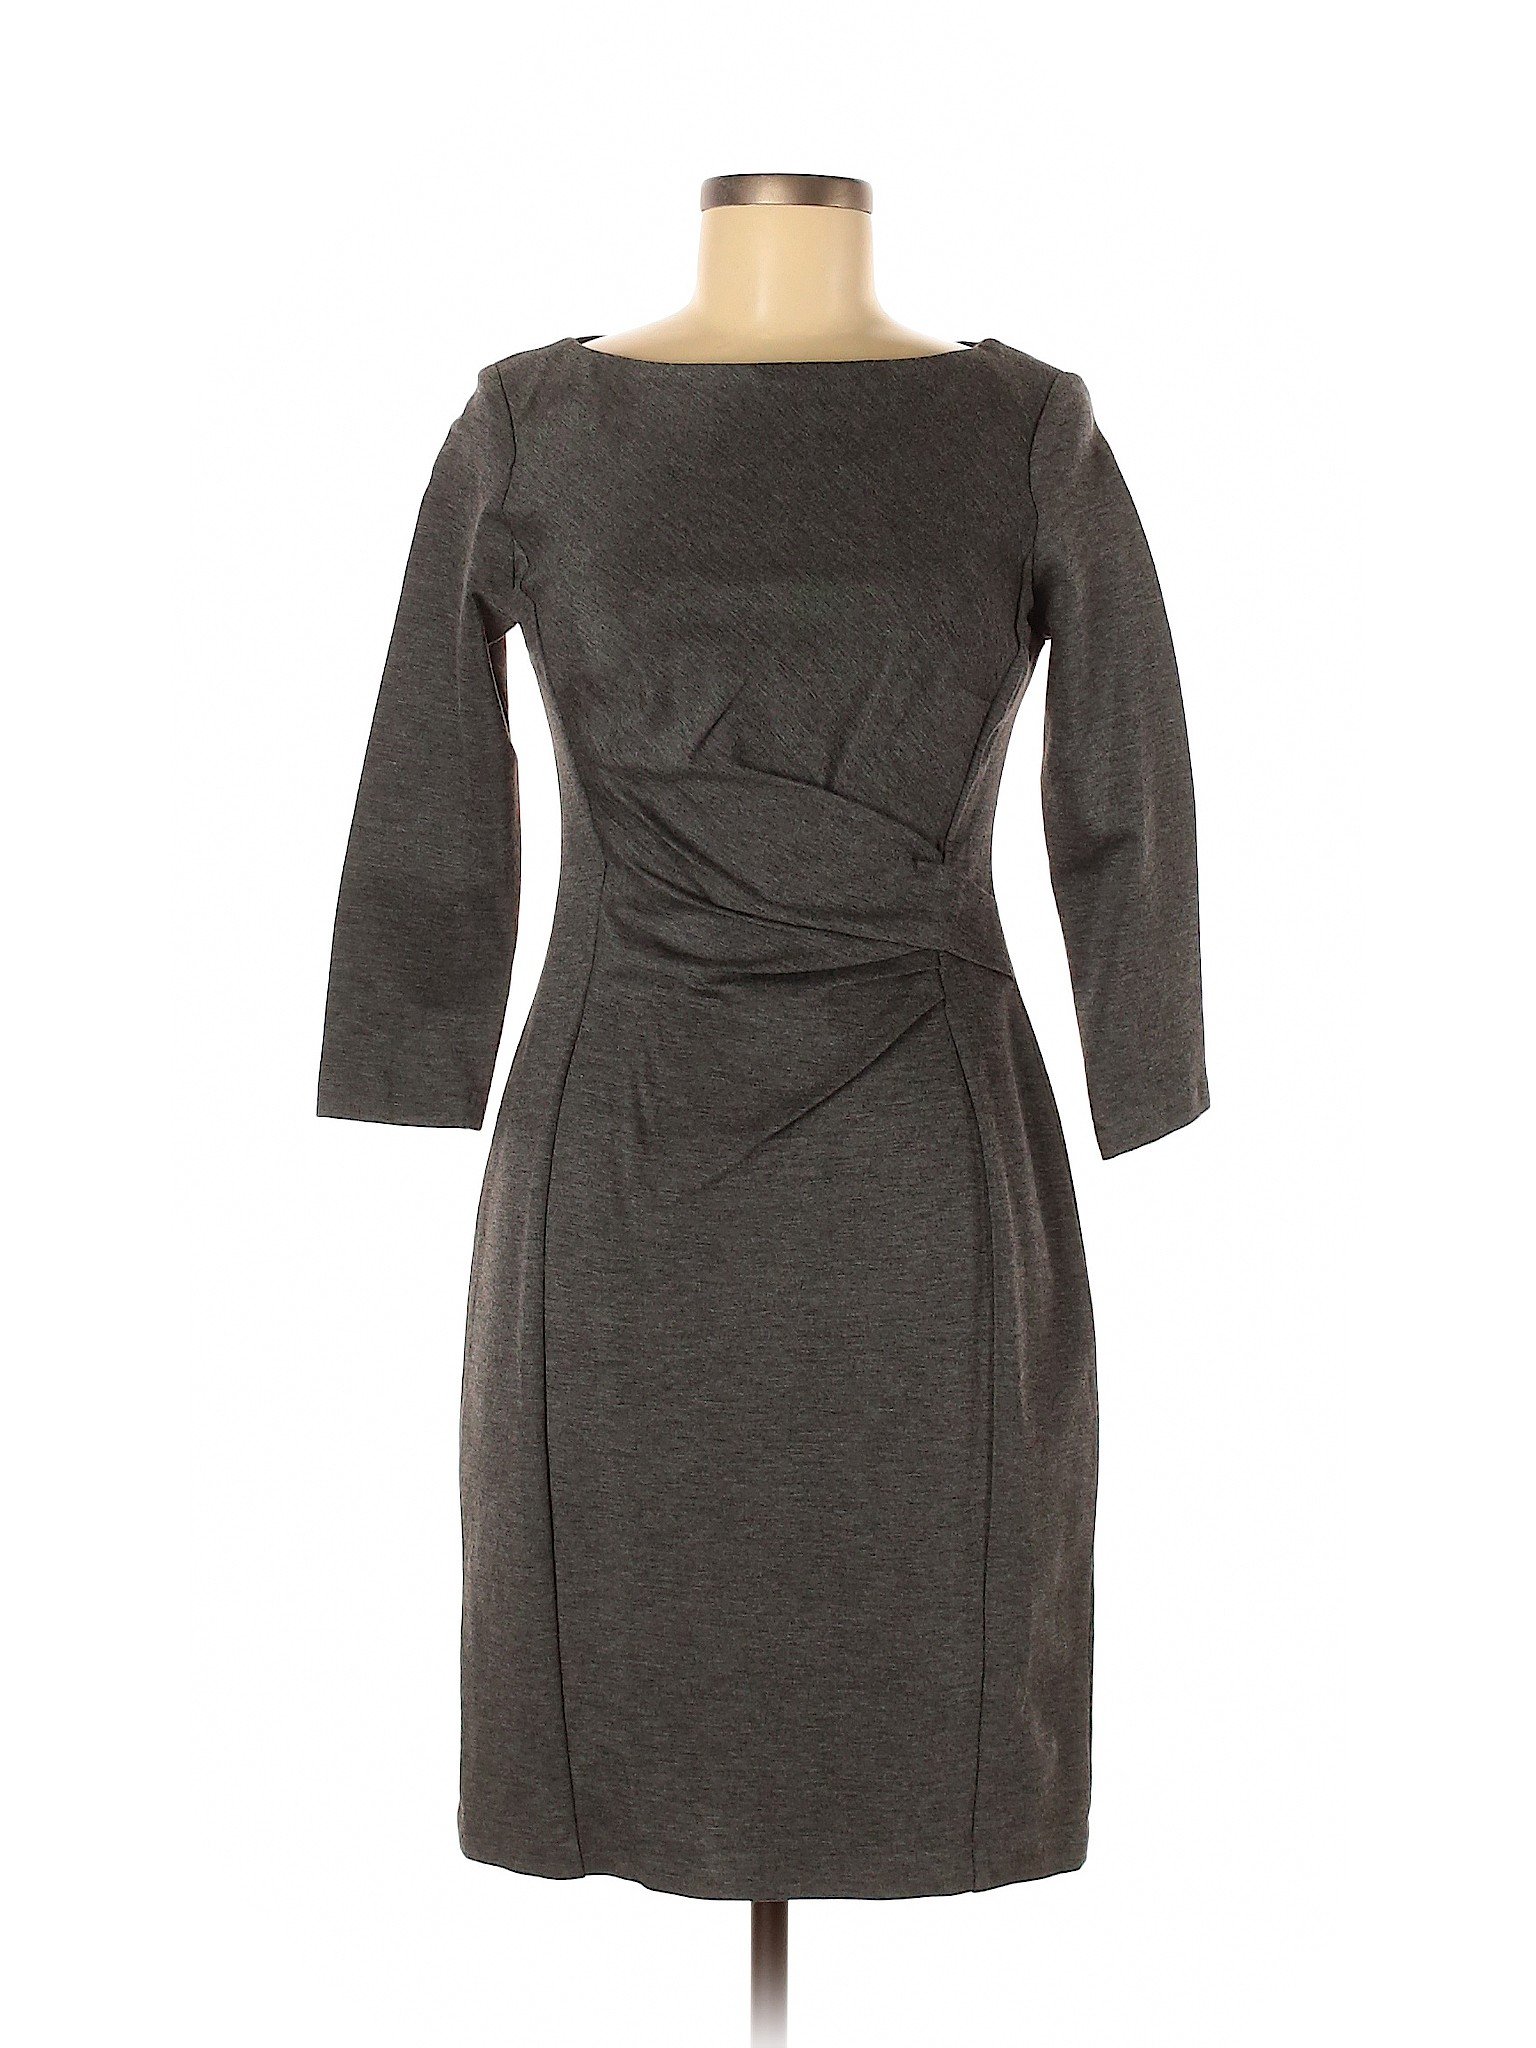 Lauren by Ralph Lauren Women Gray Casual Dress 6 | eBay